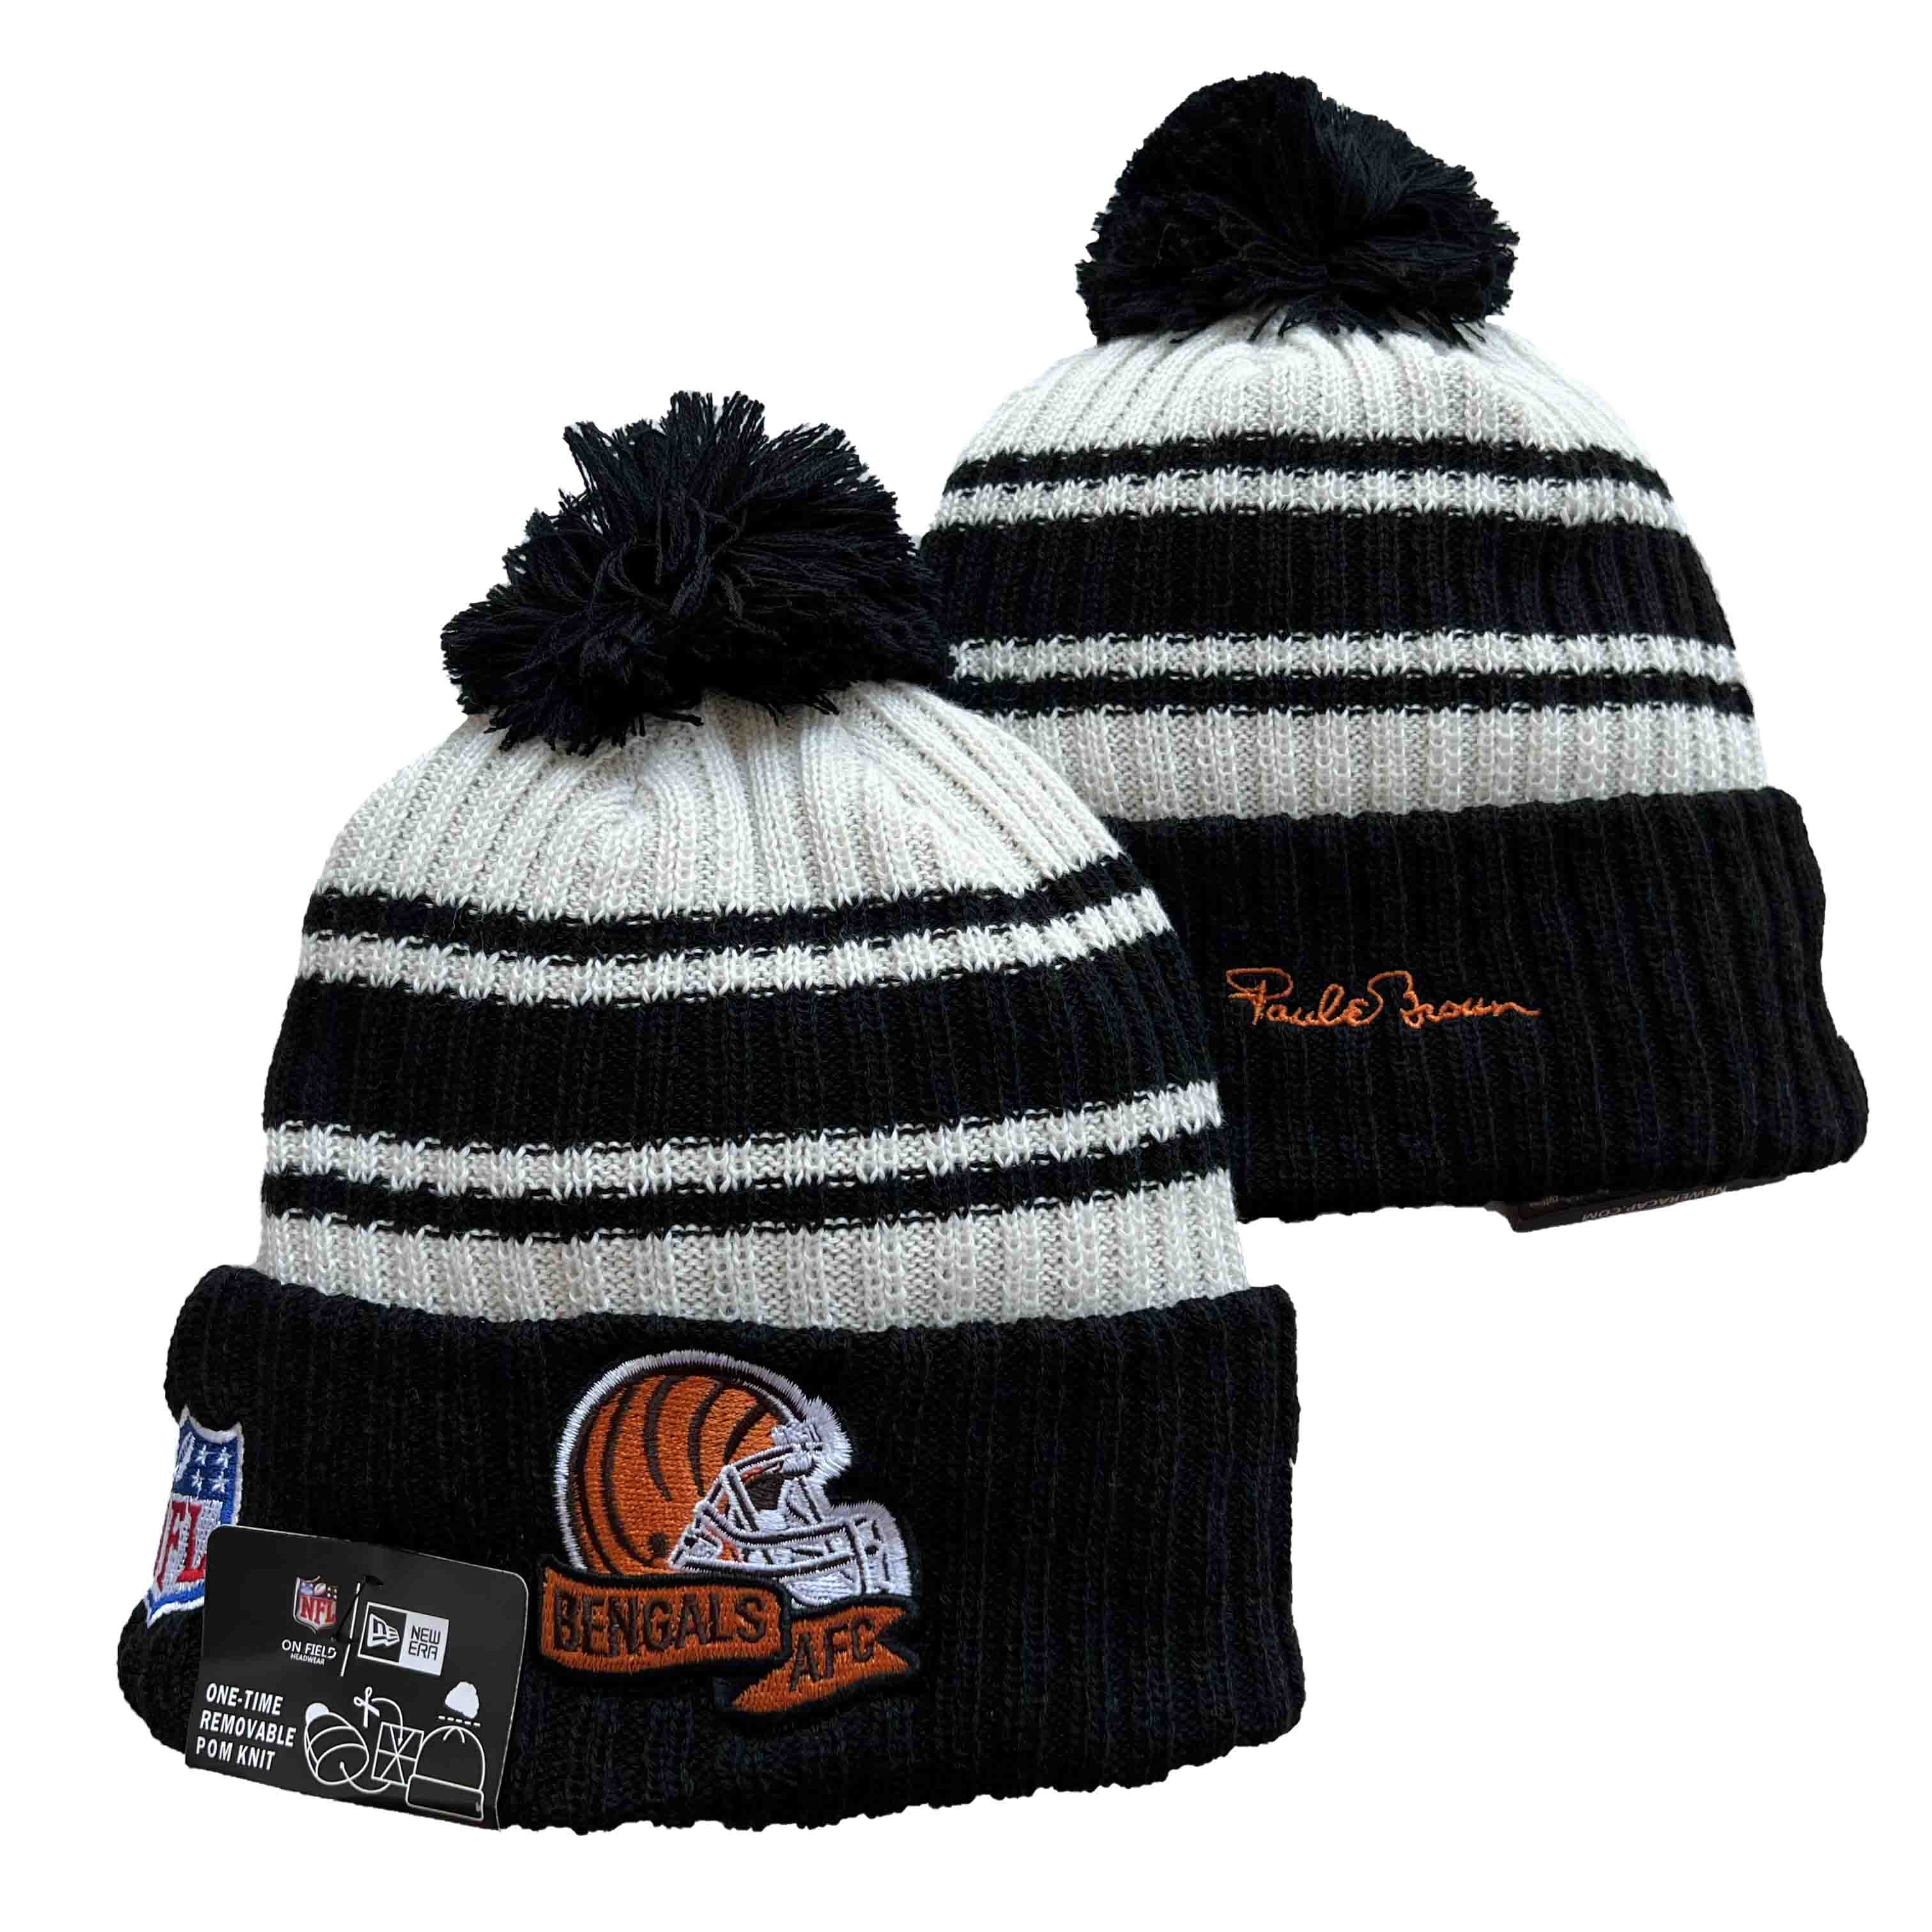 Cincinnati Bengals Knit Hats -8